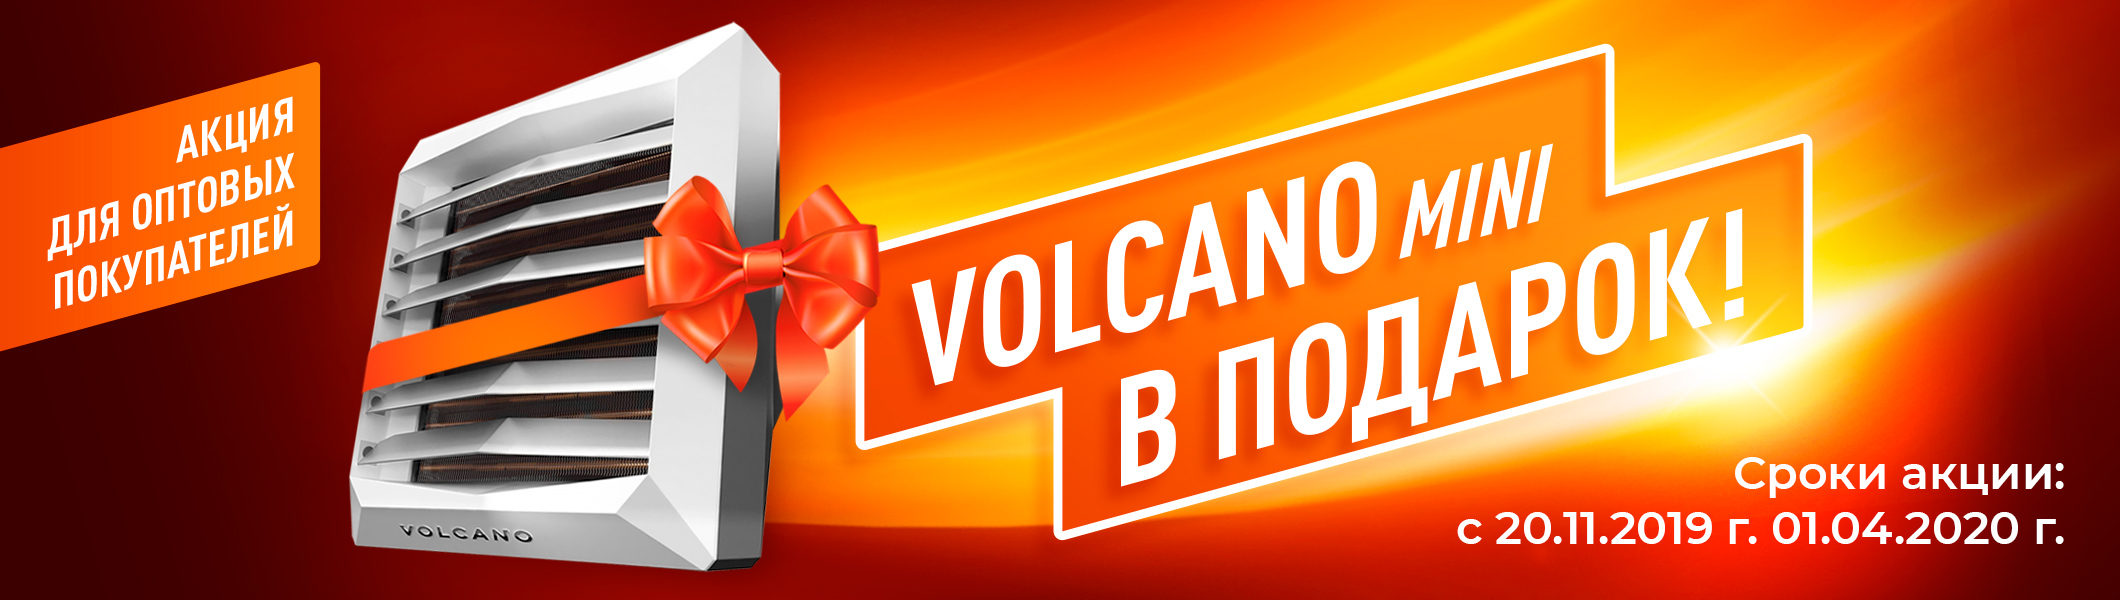 Акция «Тепловентилятор Volcano mini в подарок!»